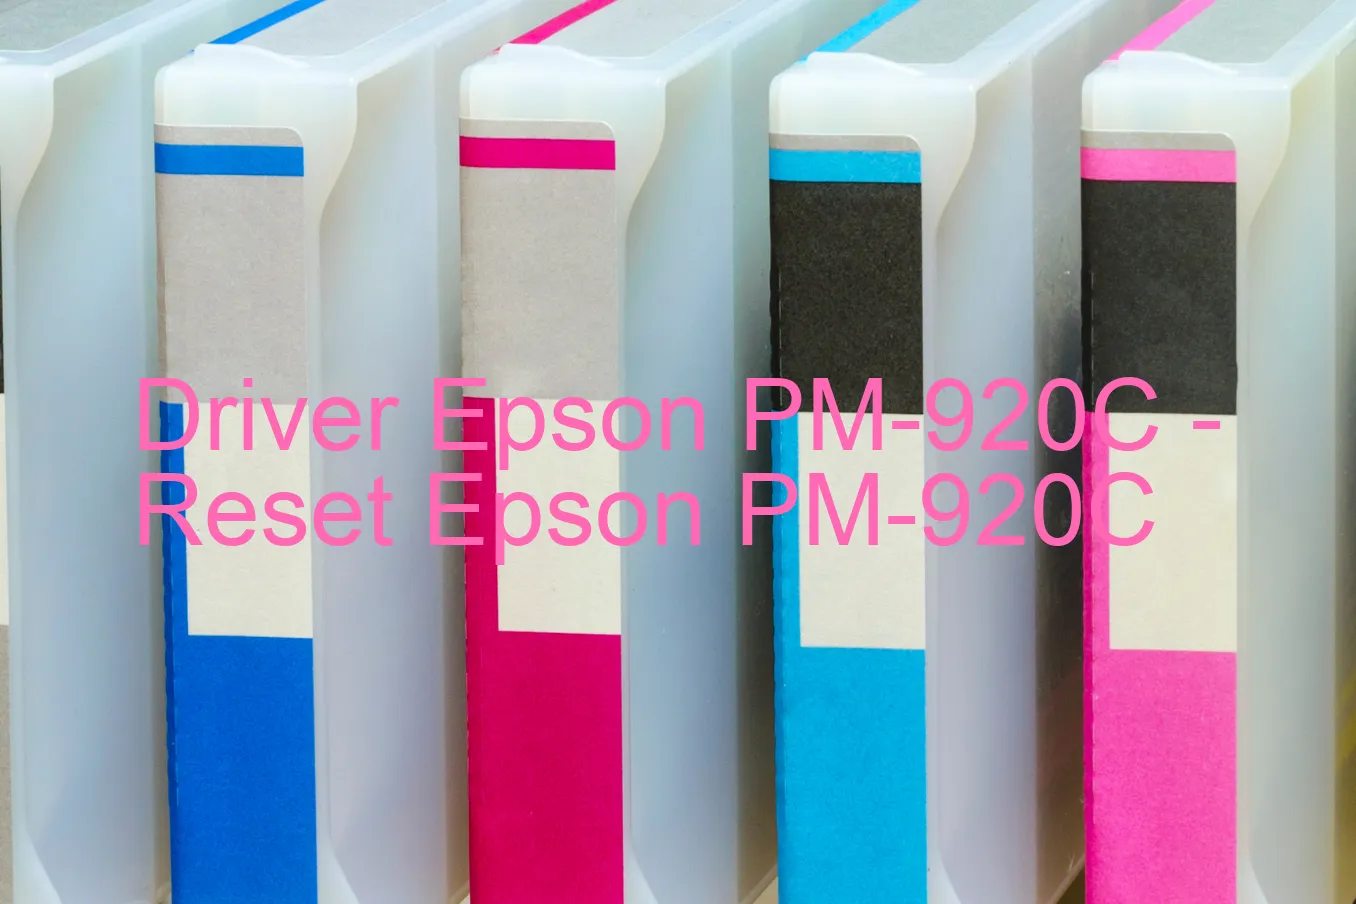 Epson PM-920Cのドライバー、Epson PM-920Cのリセットソフトウェア